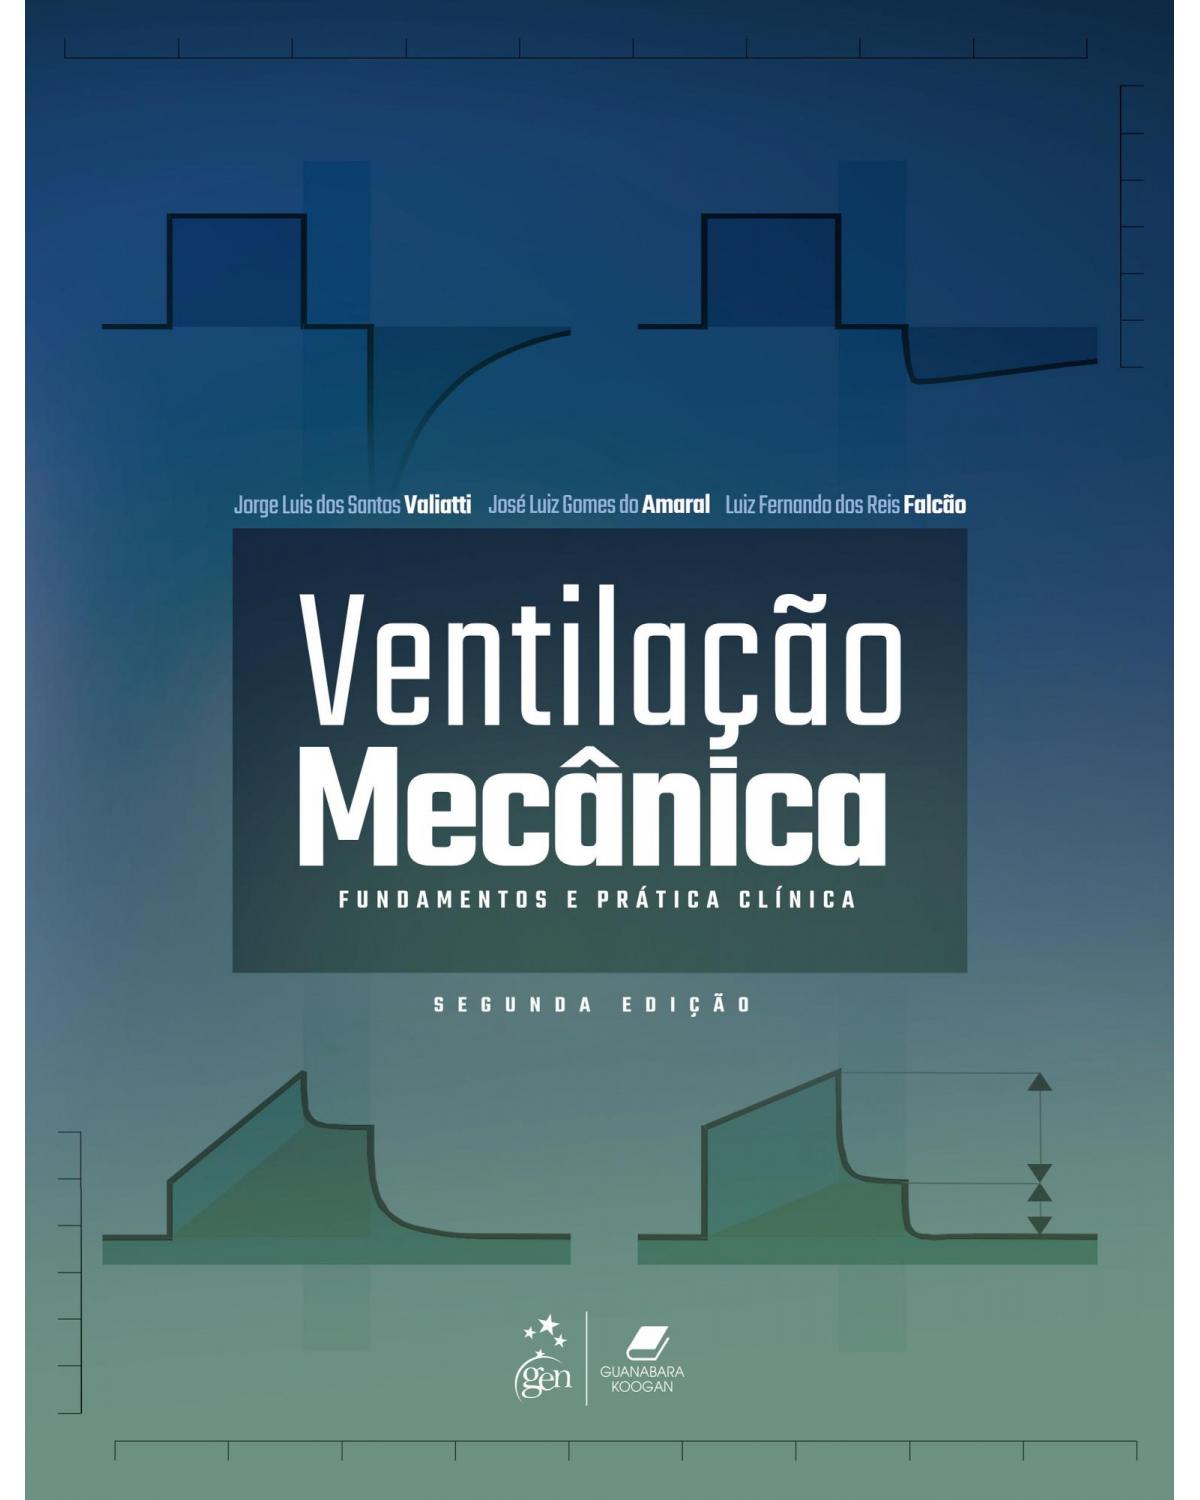 Ventilação mecânica - fundamentos e prática clínica - 2ª Edição | 2021